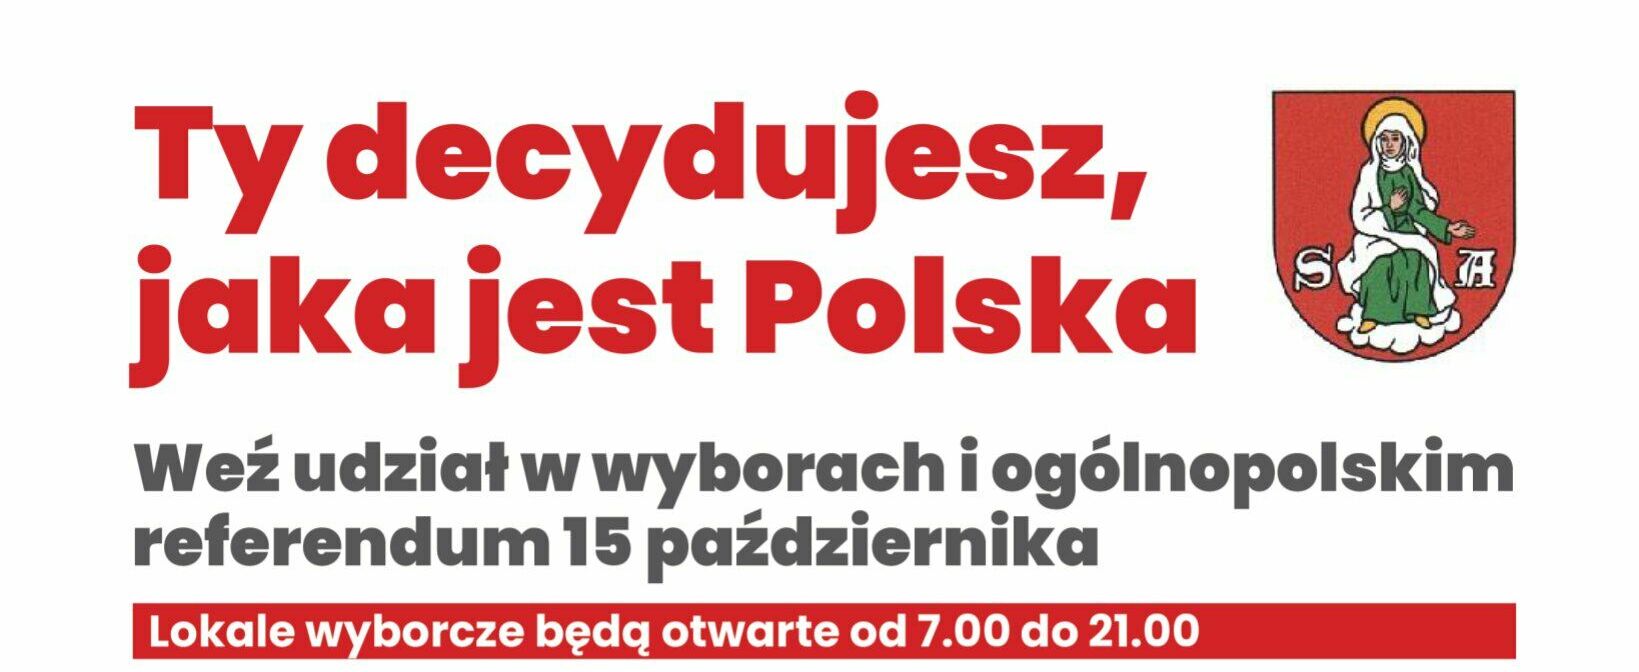 grafika z napisami: Ty decydujesz, jaka jest Polska Weź udział w wyborach i ogólnopolskim referendum 15 października. Lokale wyborcze będą otwarte od 7.00 do 21.00 